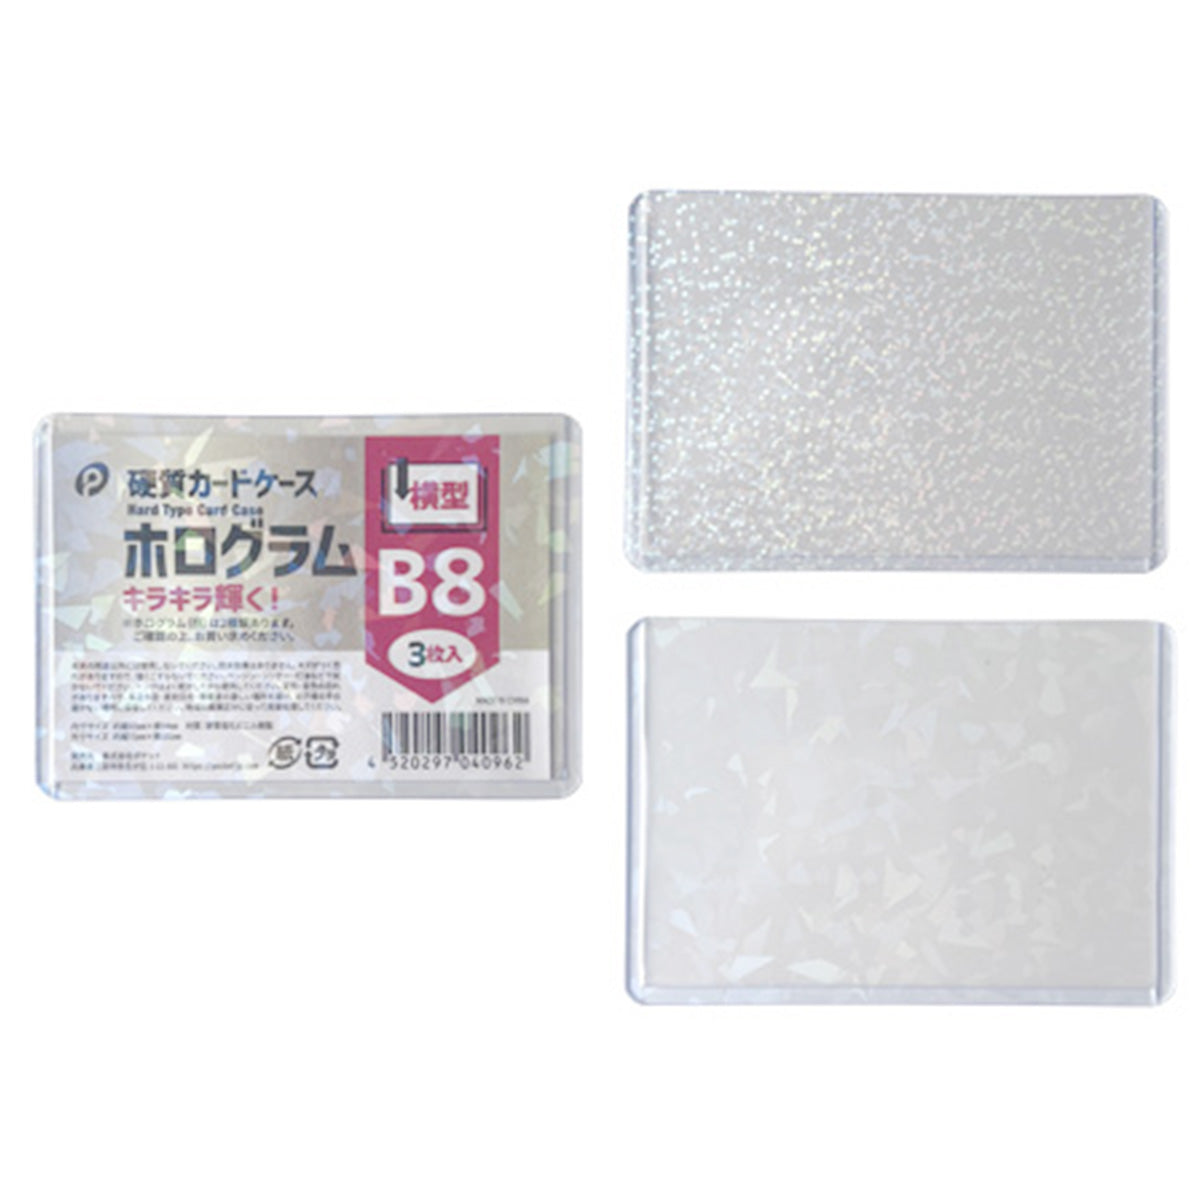 ホログラム硬質カードケース横型B8/3枚入  0894/352130